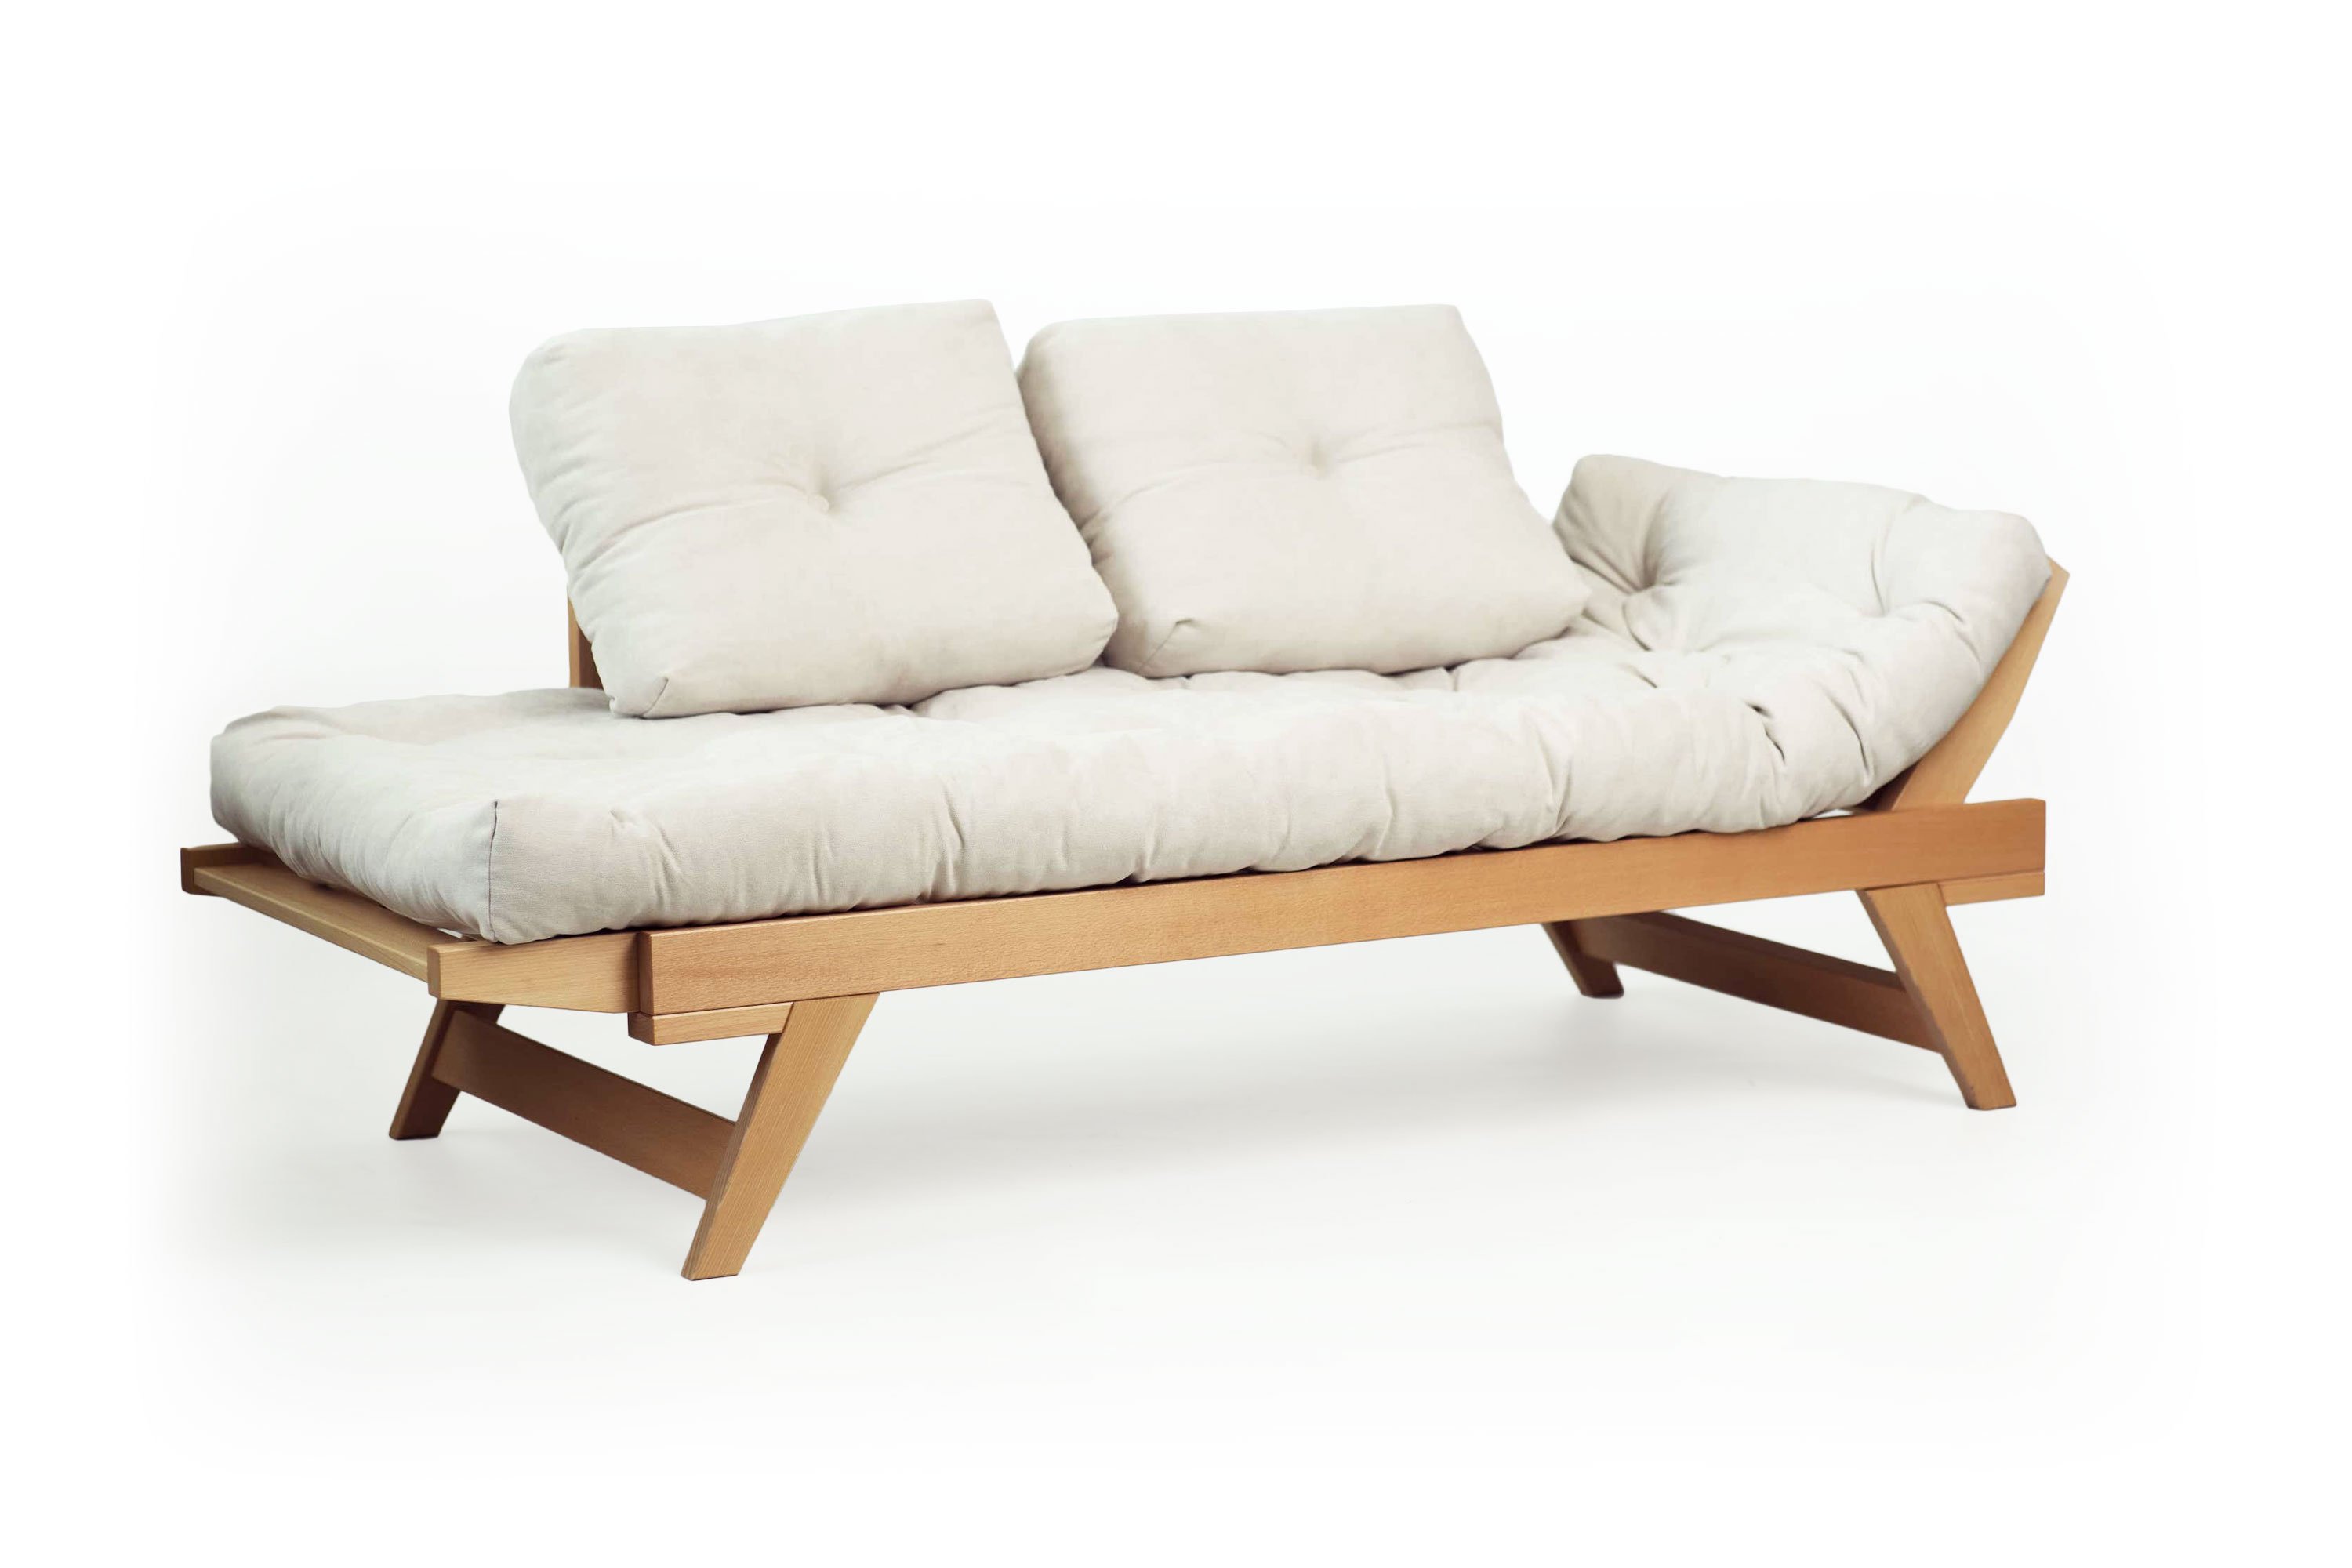 Eksisterer Håndskrift Sælger Lykke Lounge Daybed Sofa Solid Beech Wood Hand Rub Natural Oil Finish  (Natural) by Prestige